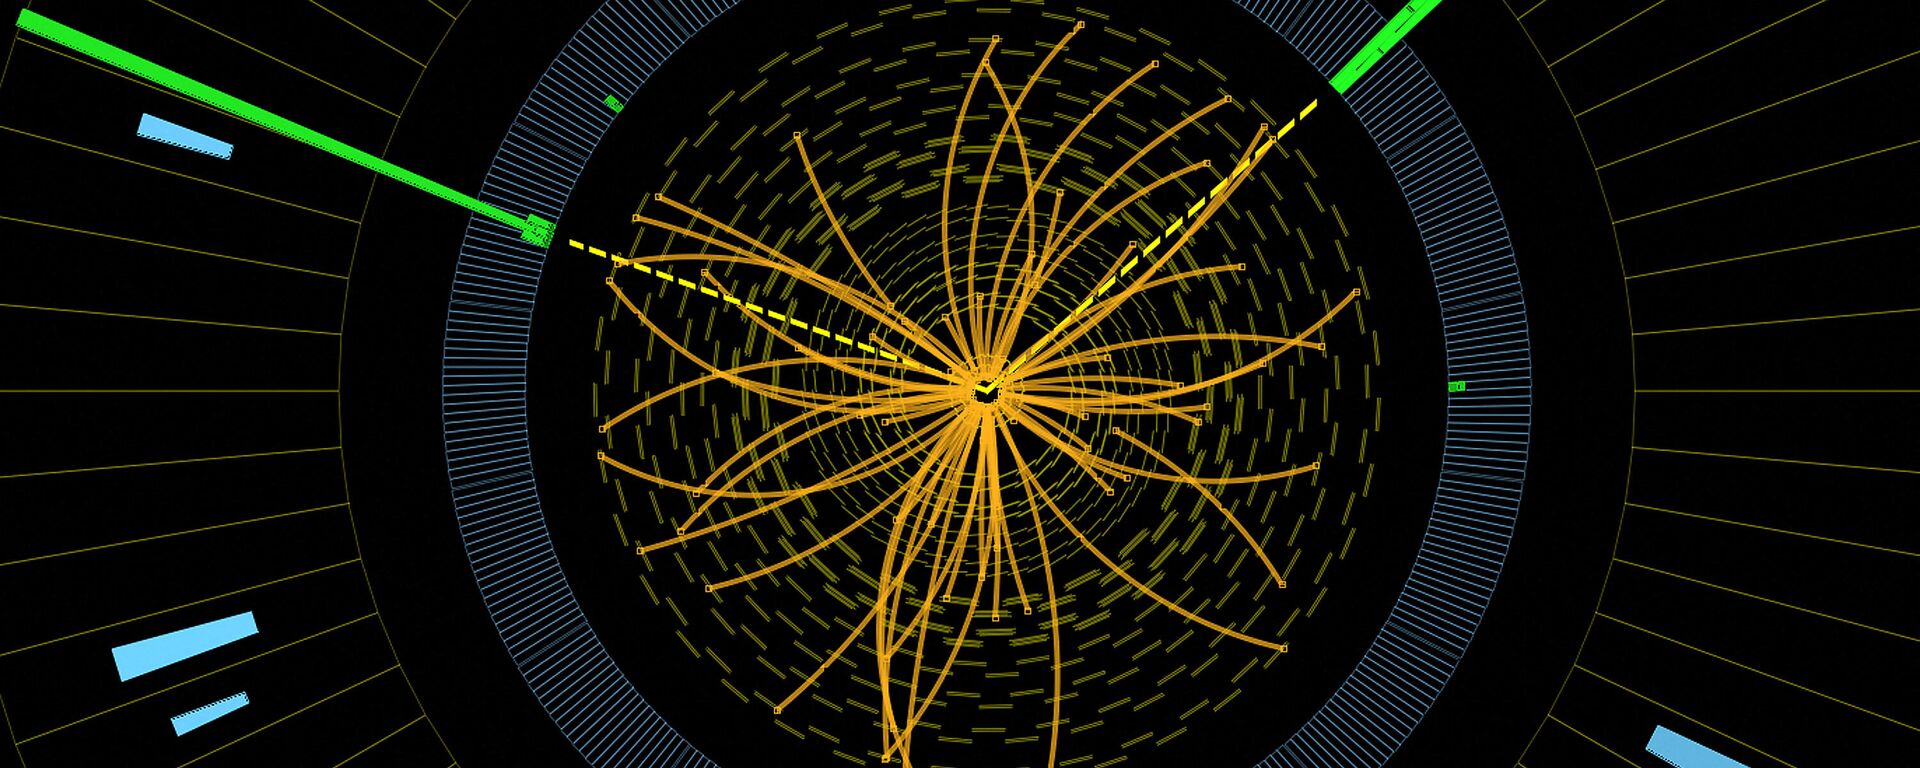 Un experimento en busca del bosón de Higgs, un gráfico - Sputnik Mundo, 1920, 11.02.2021